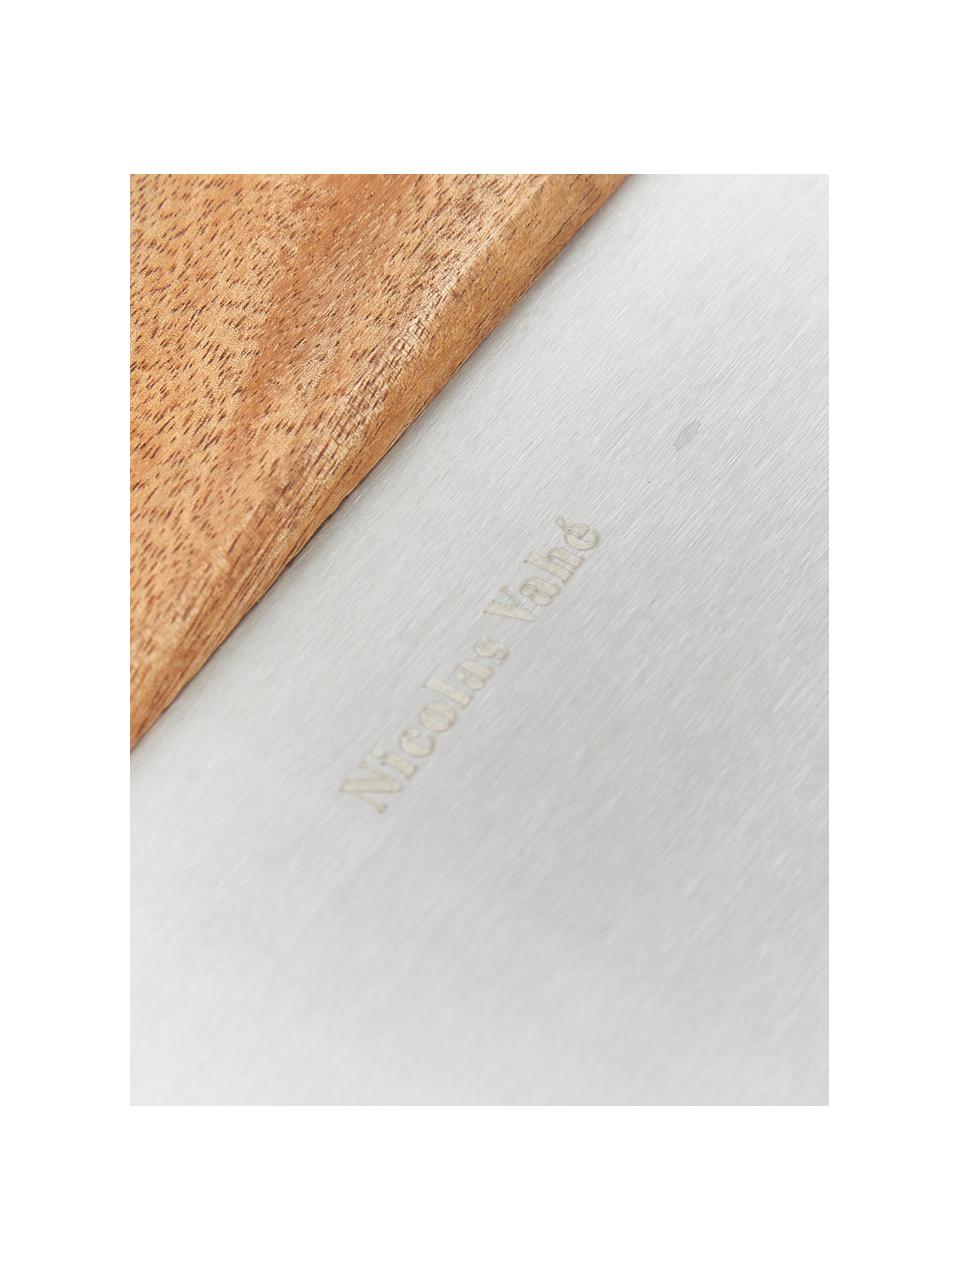 Deegsnijder Puka van acaciahout en edelstaal, Acaciahout, zilverkleurig, B 15 cm x H 12 cm